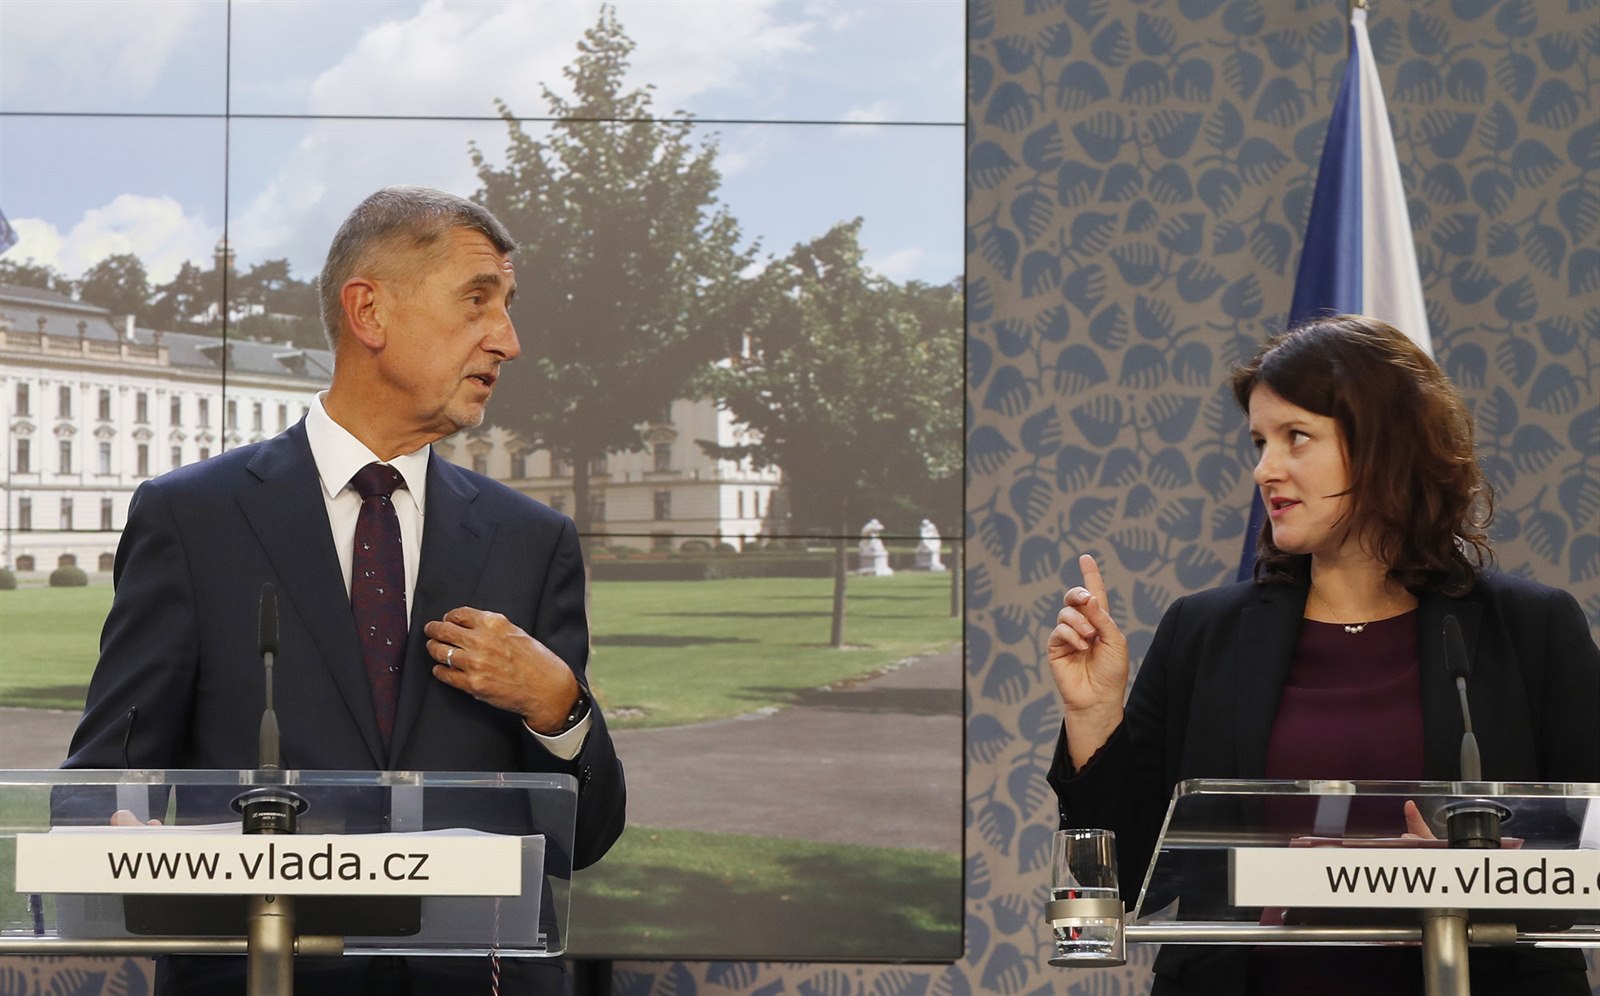 Γκάφα από υπουργό στην Τσεχία: Αποκάλεσε τον πρωθυπουργό «βλάκα» – Ξέχασε ότι ήταν ανοιχτά τα μικρόφωνα (βίντεο)